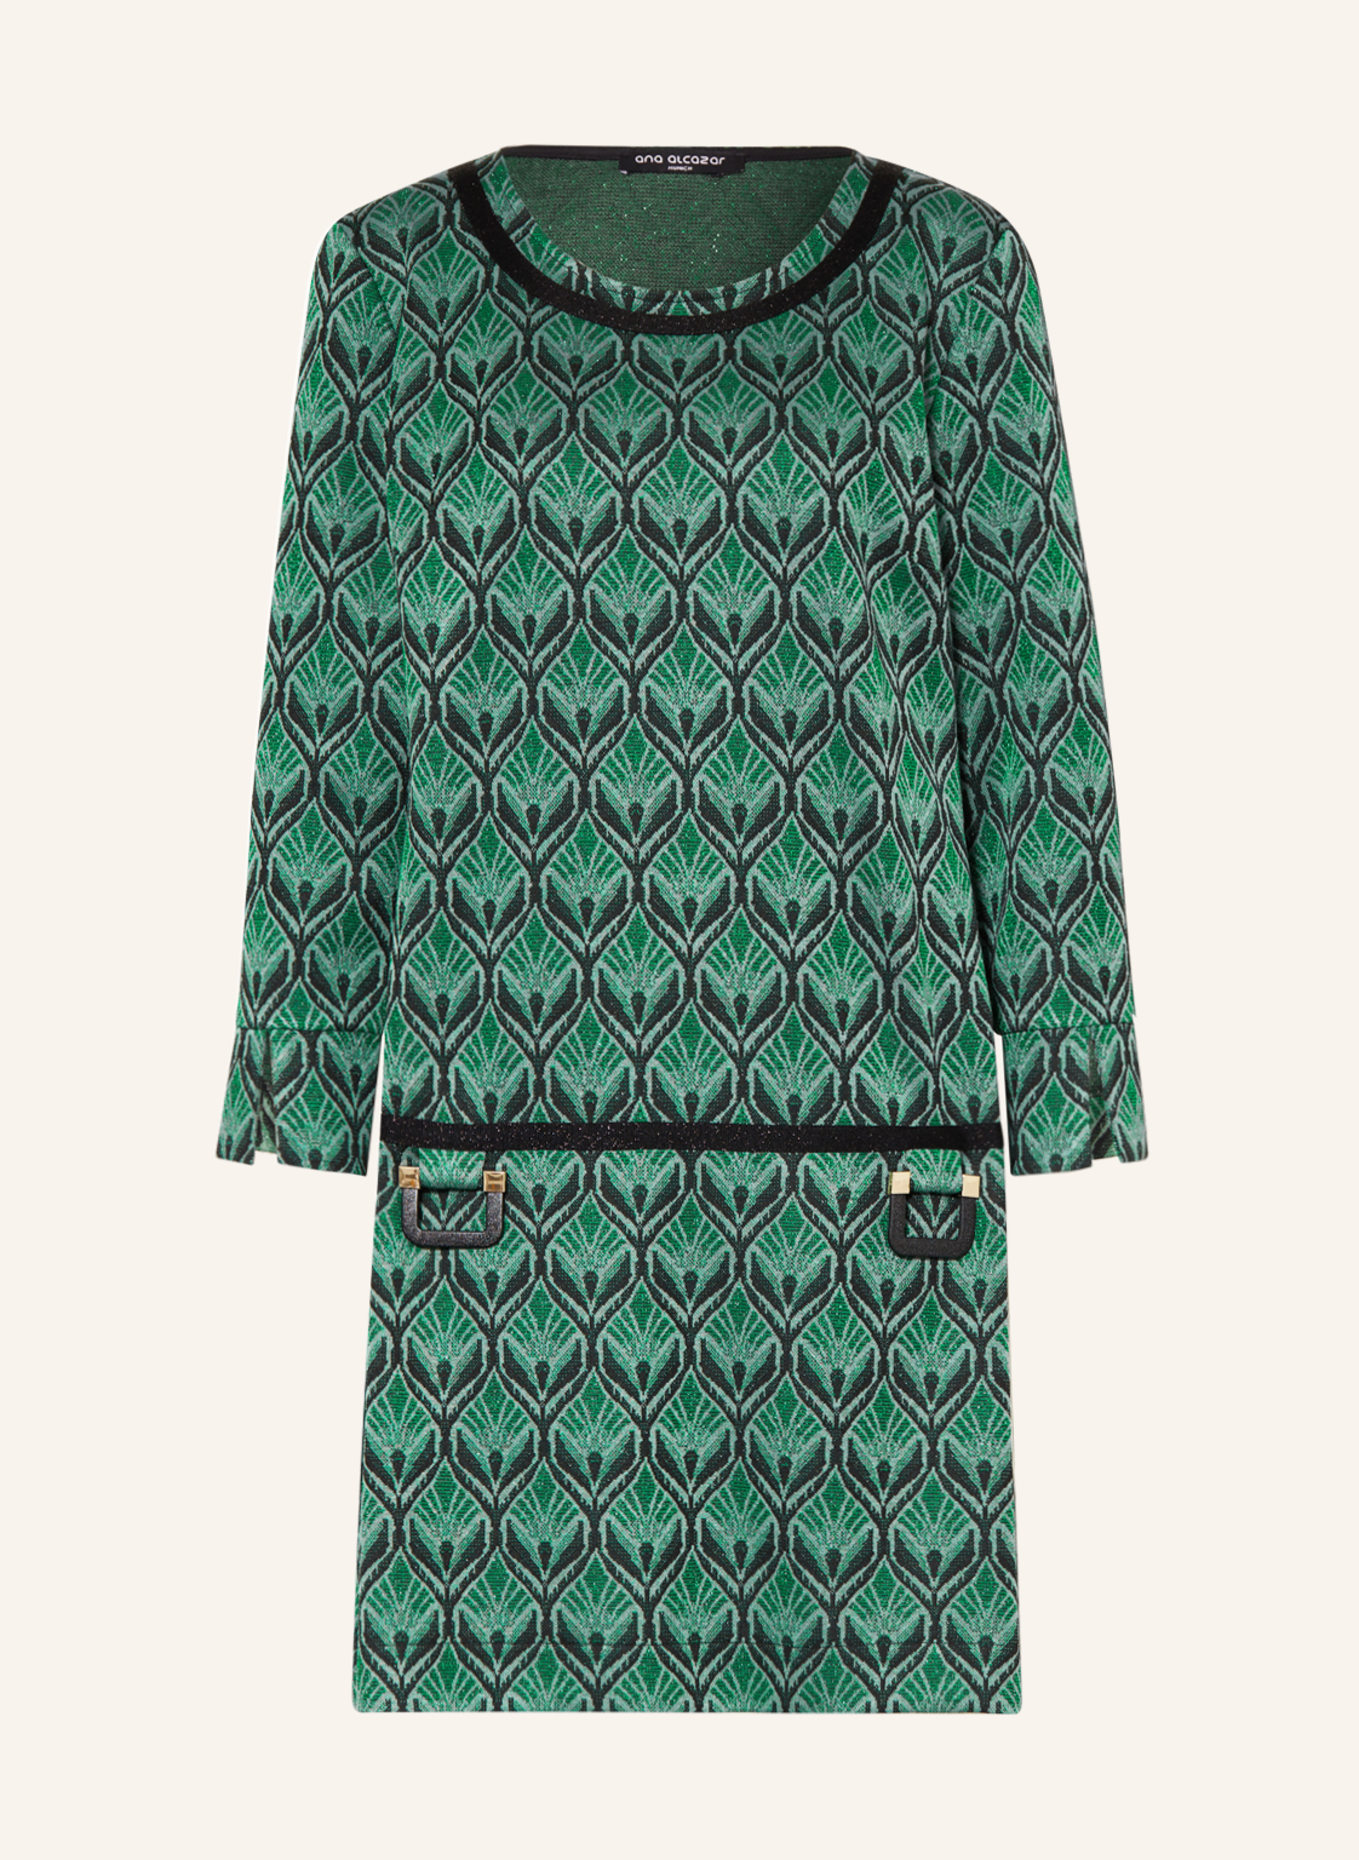 Ana Alcazar Jerseykleid mit Glitzergarn in grün/ schwarz | Blusenkleider